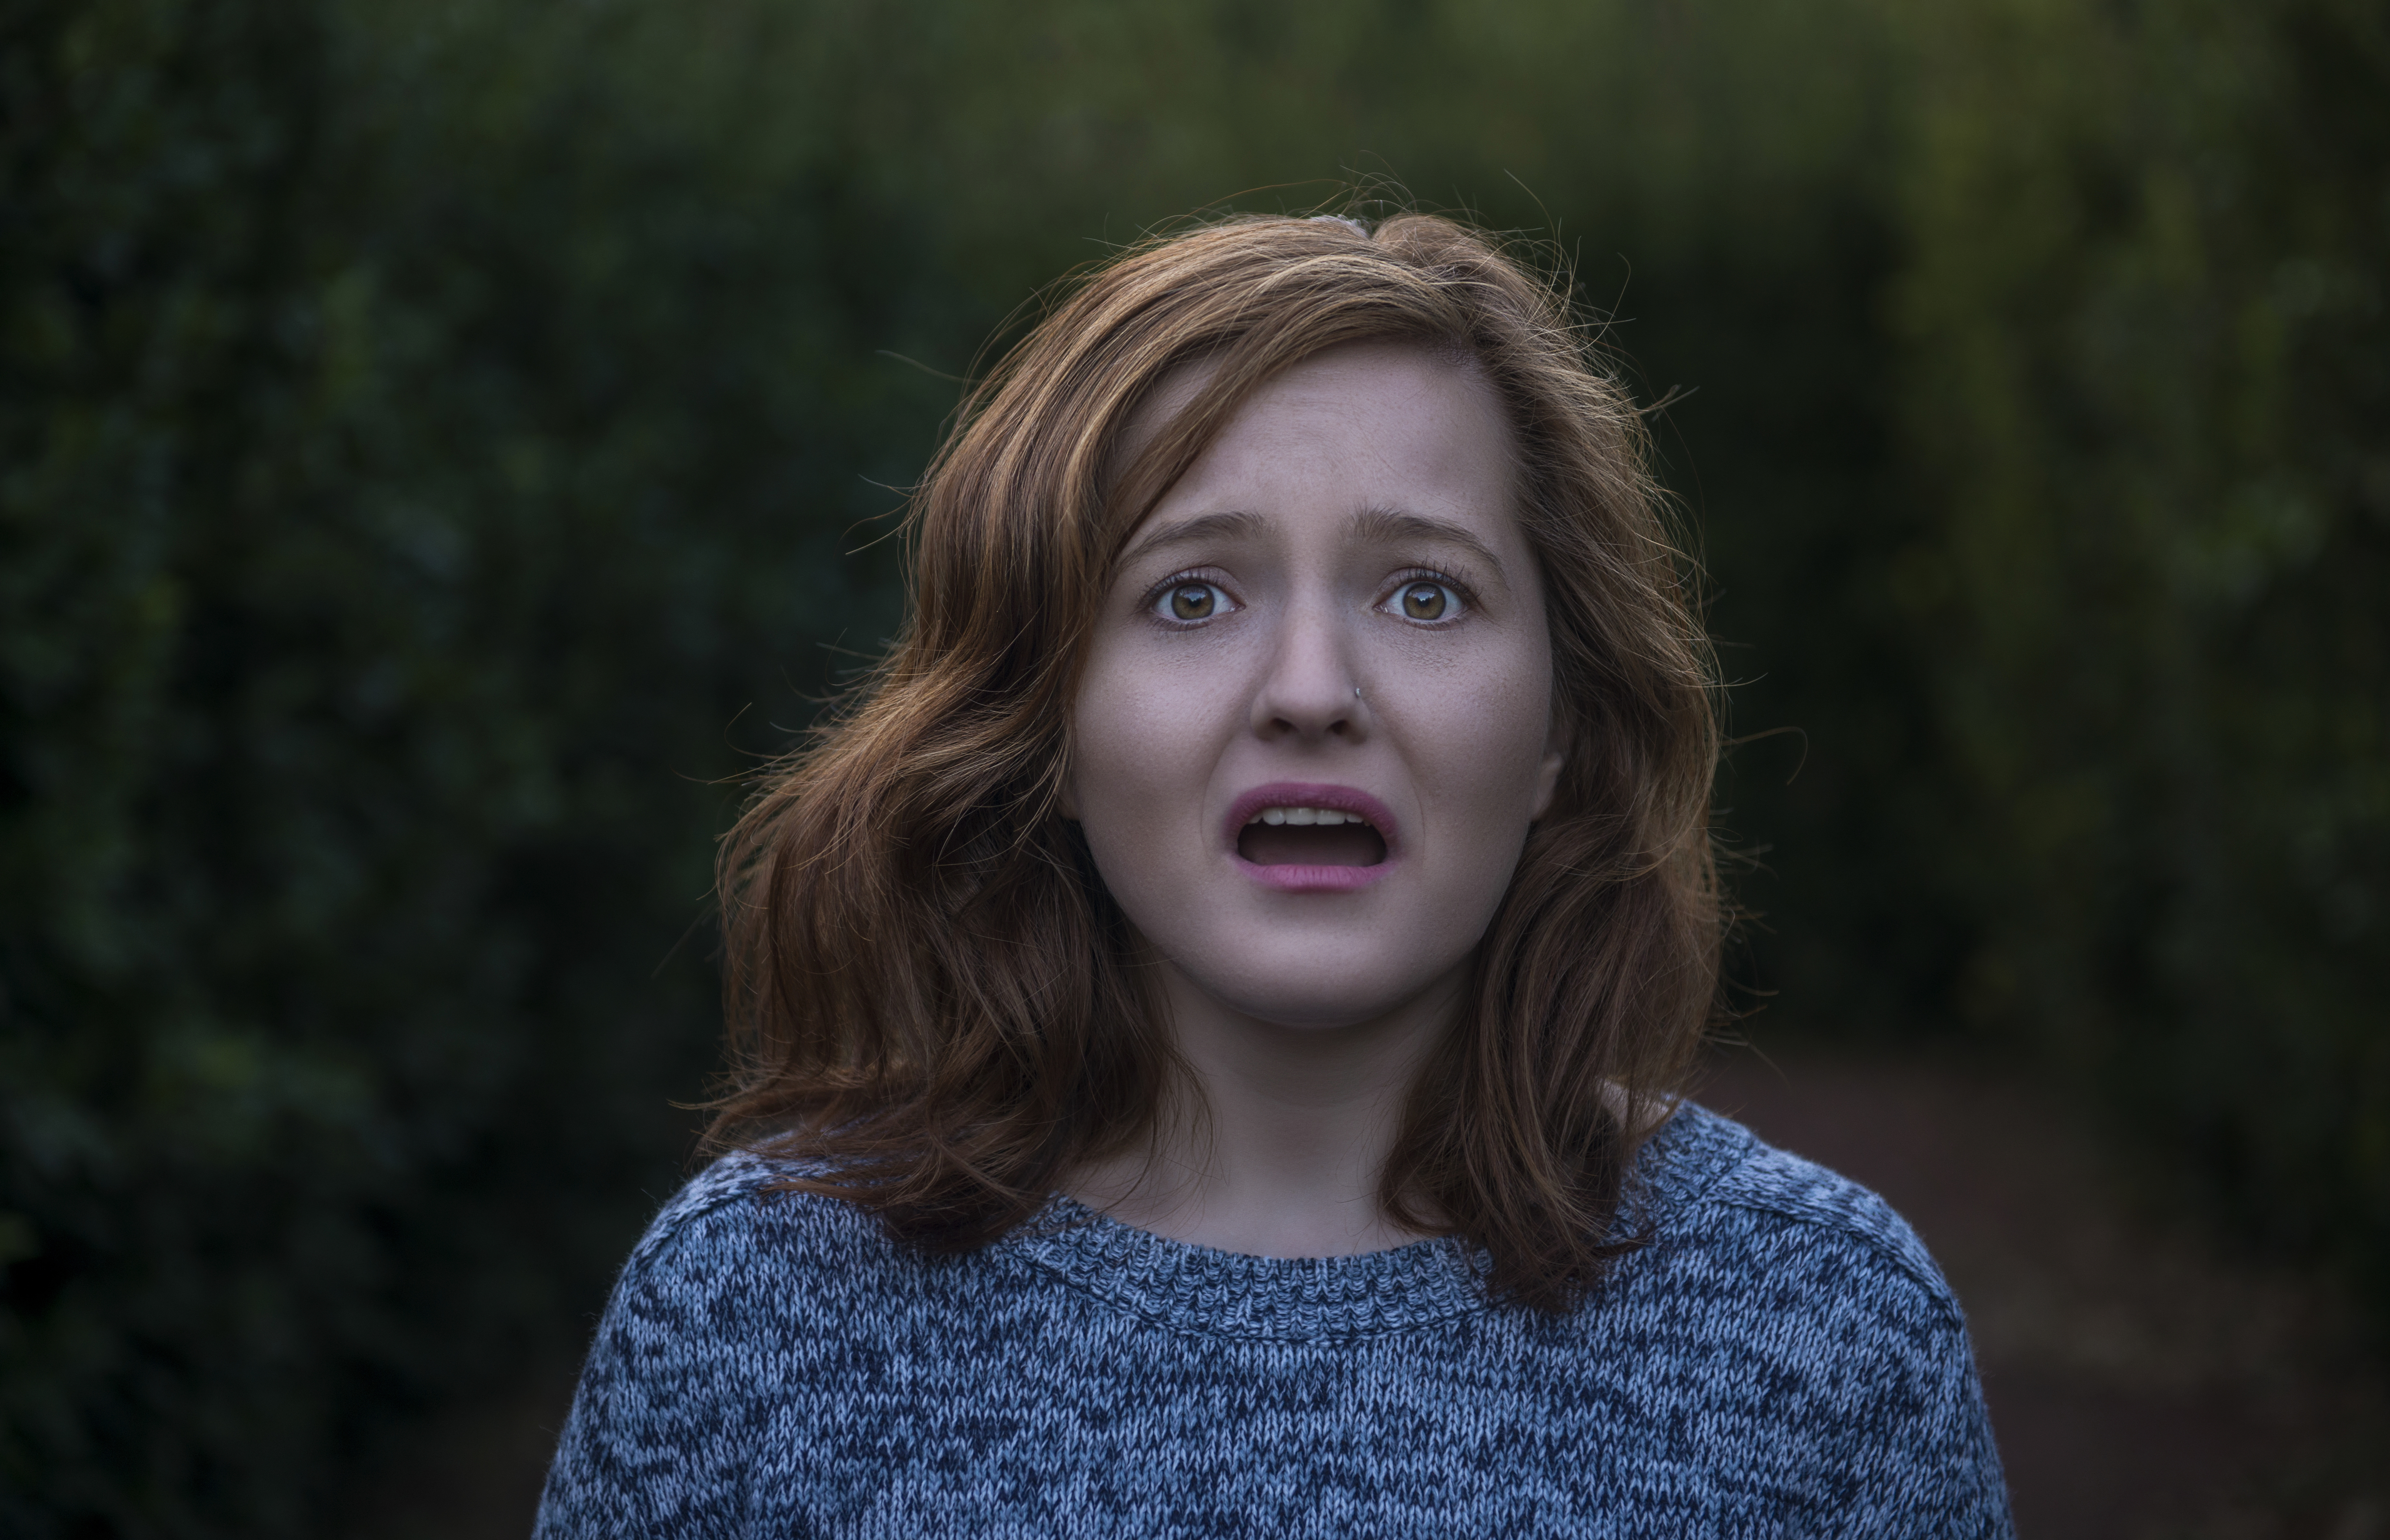 Portrait d'une jeune femme choquée regardant l'appareil photo avec une expression faciale négative | Source : Getty Images